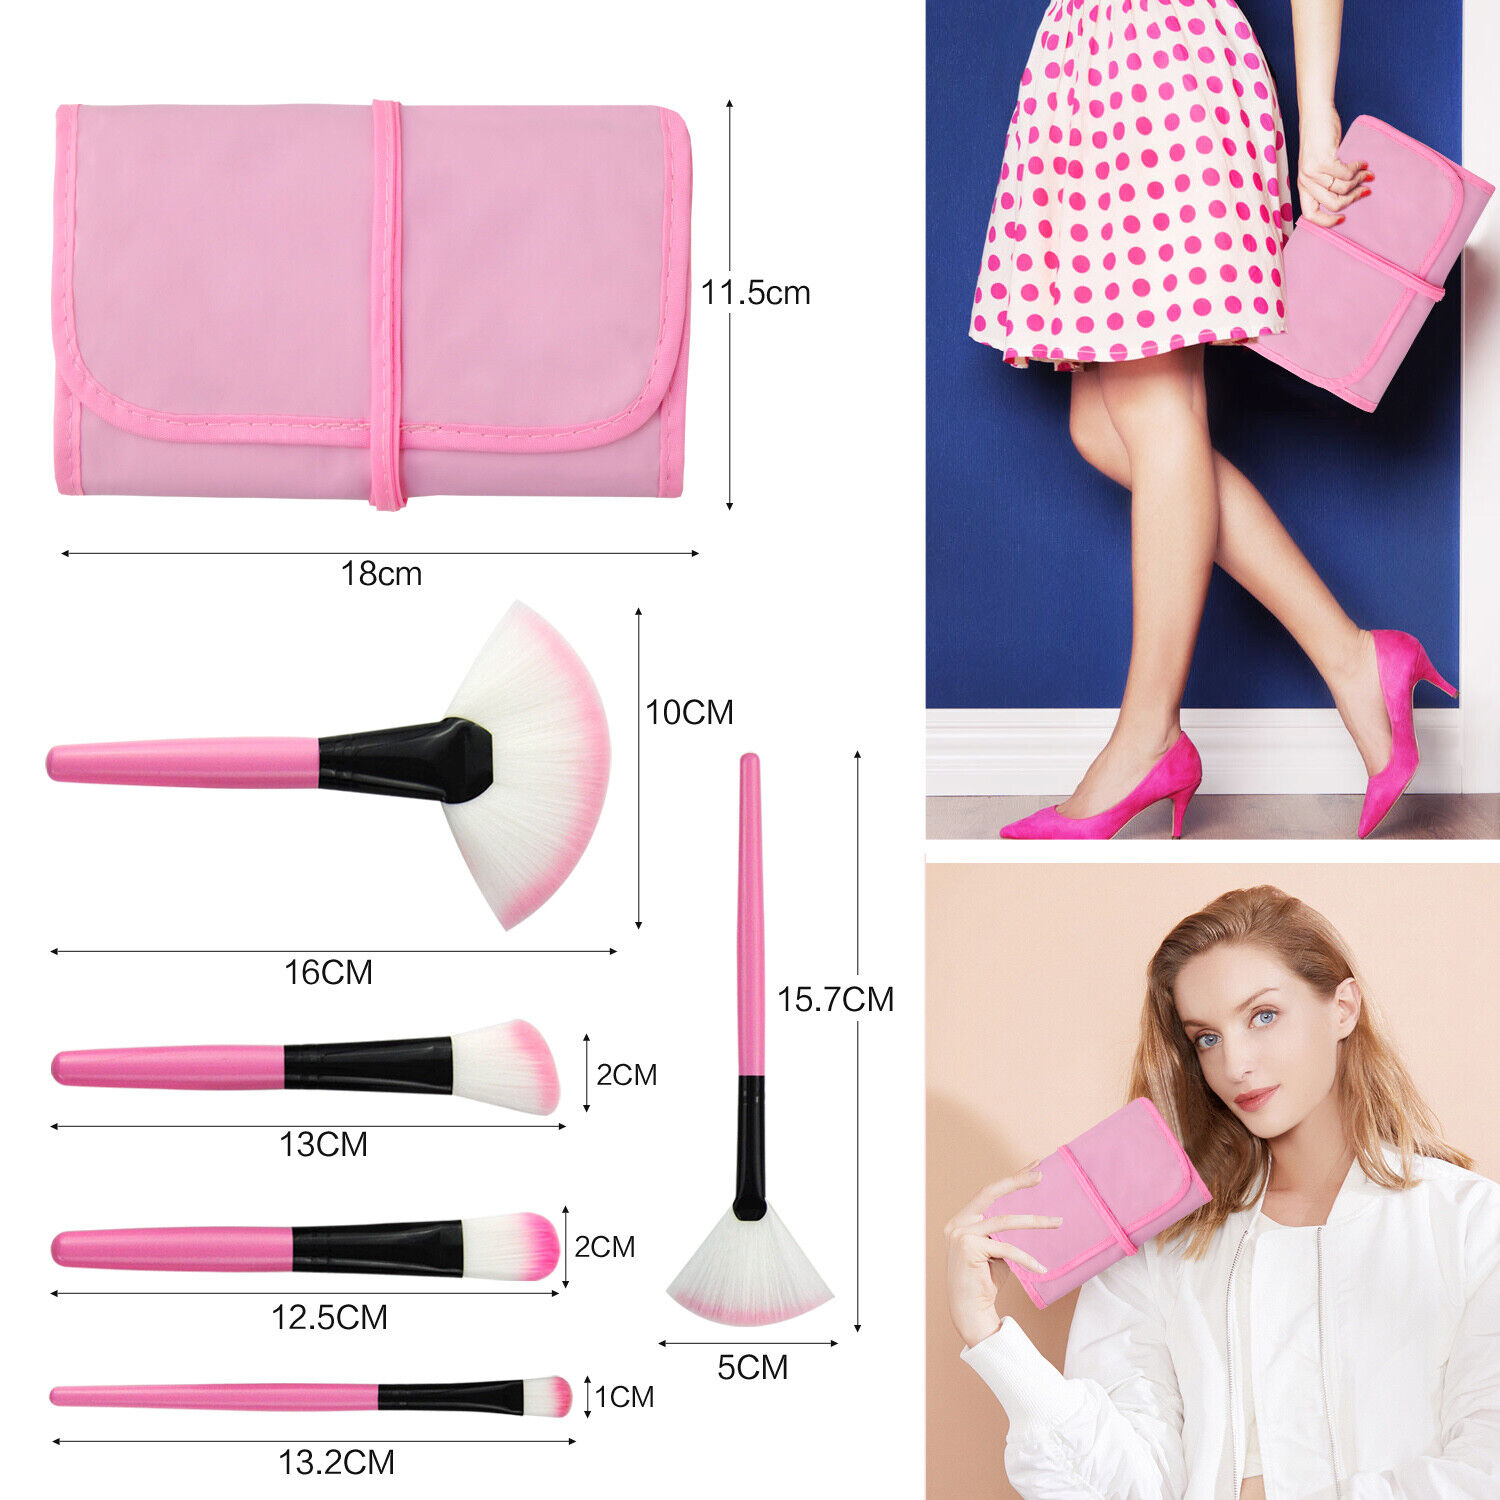 32PCS Pro Make up Brushes Set Cosmetic Foundation Powder Lip Tool +Luxury Bag US YUWAKU Does not apply - фотография #5